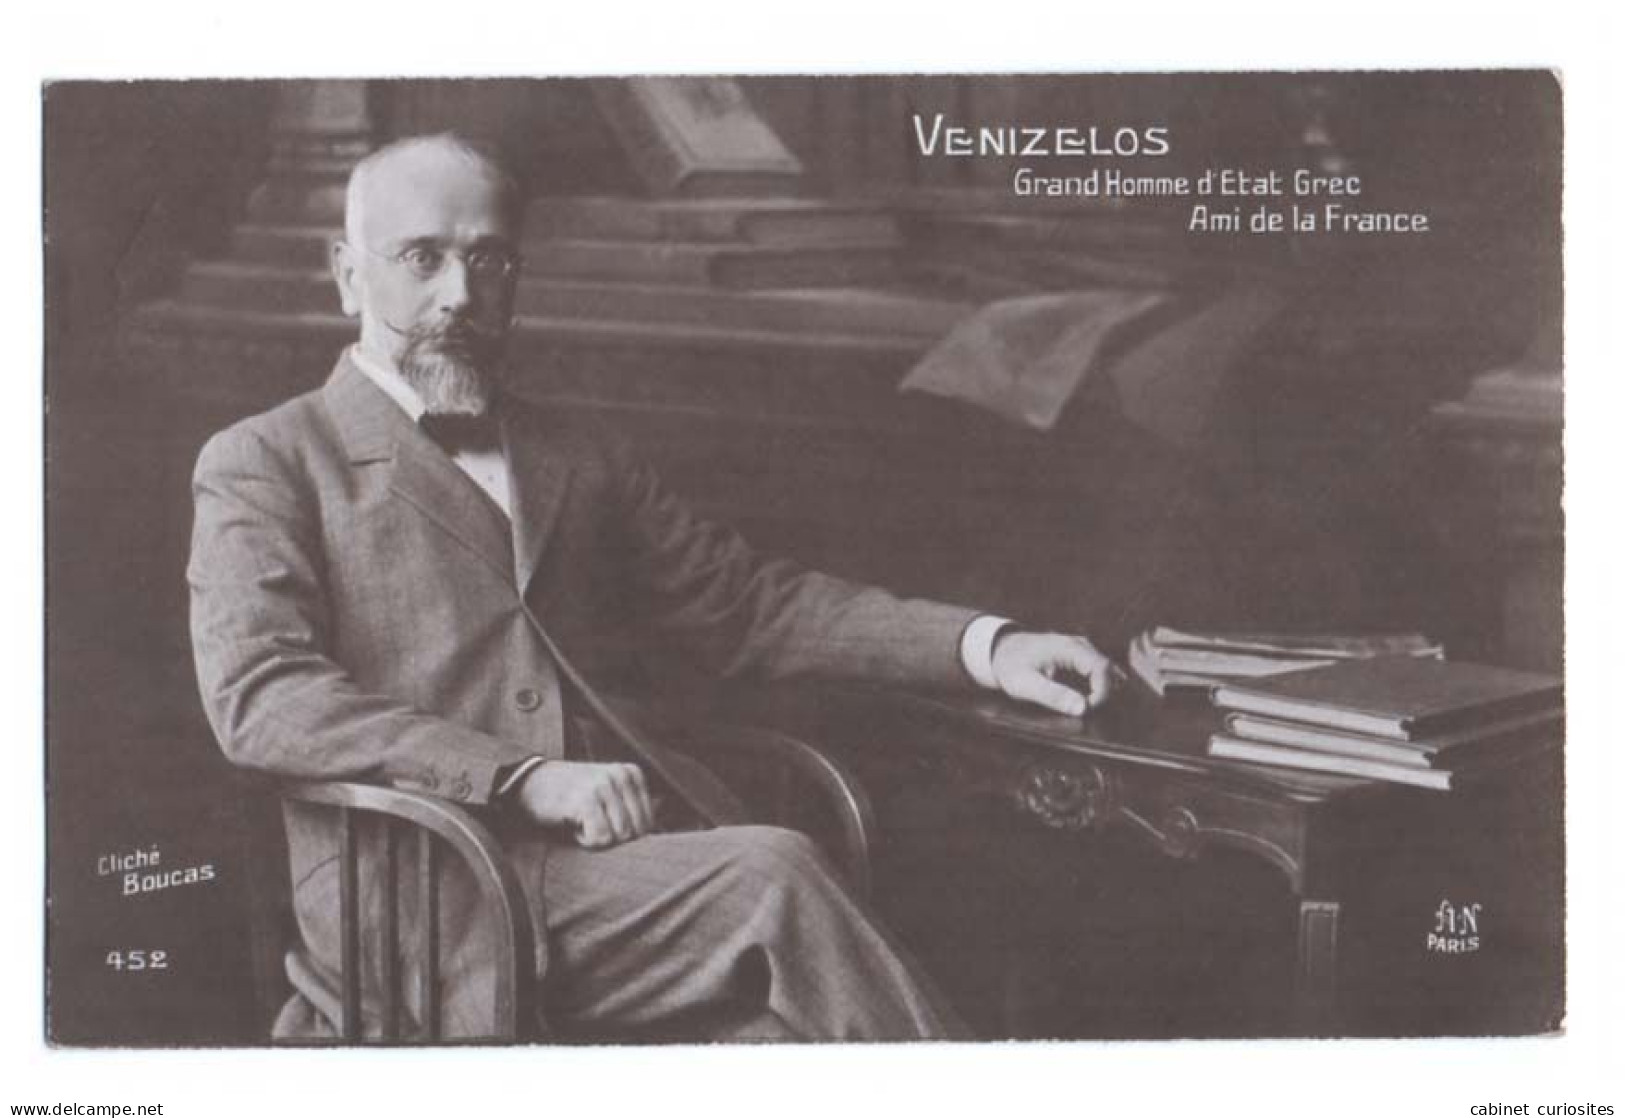 VENIZELOS - Grand Homme D'Etat Grec - Ami De La France - Cliché Boucas - Beau Portrait - Premier Ministre De Grèce 1910 - Weltkrieg 1914-18